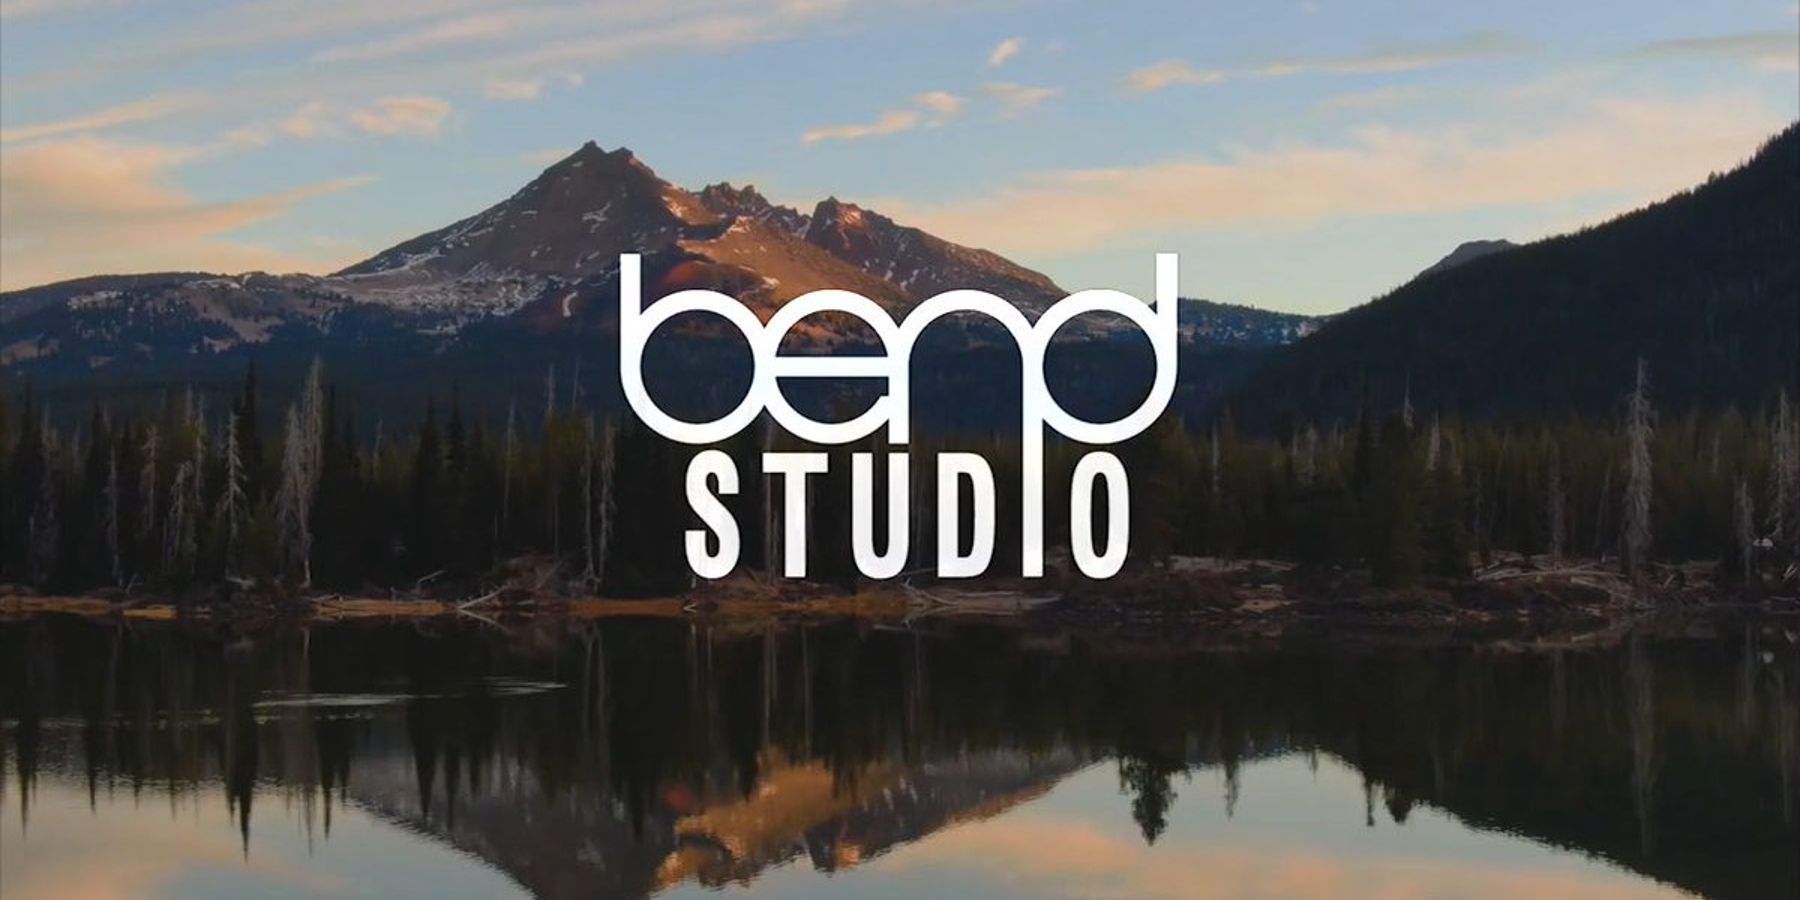 Days Gone Dev Bend Studio Teases Next Game